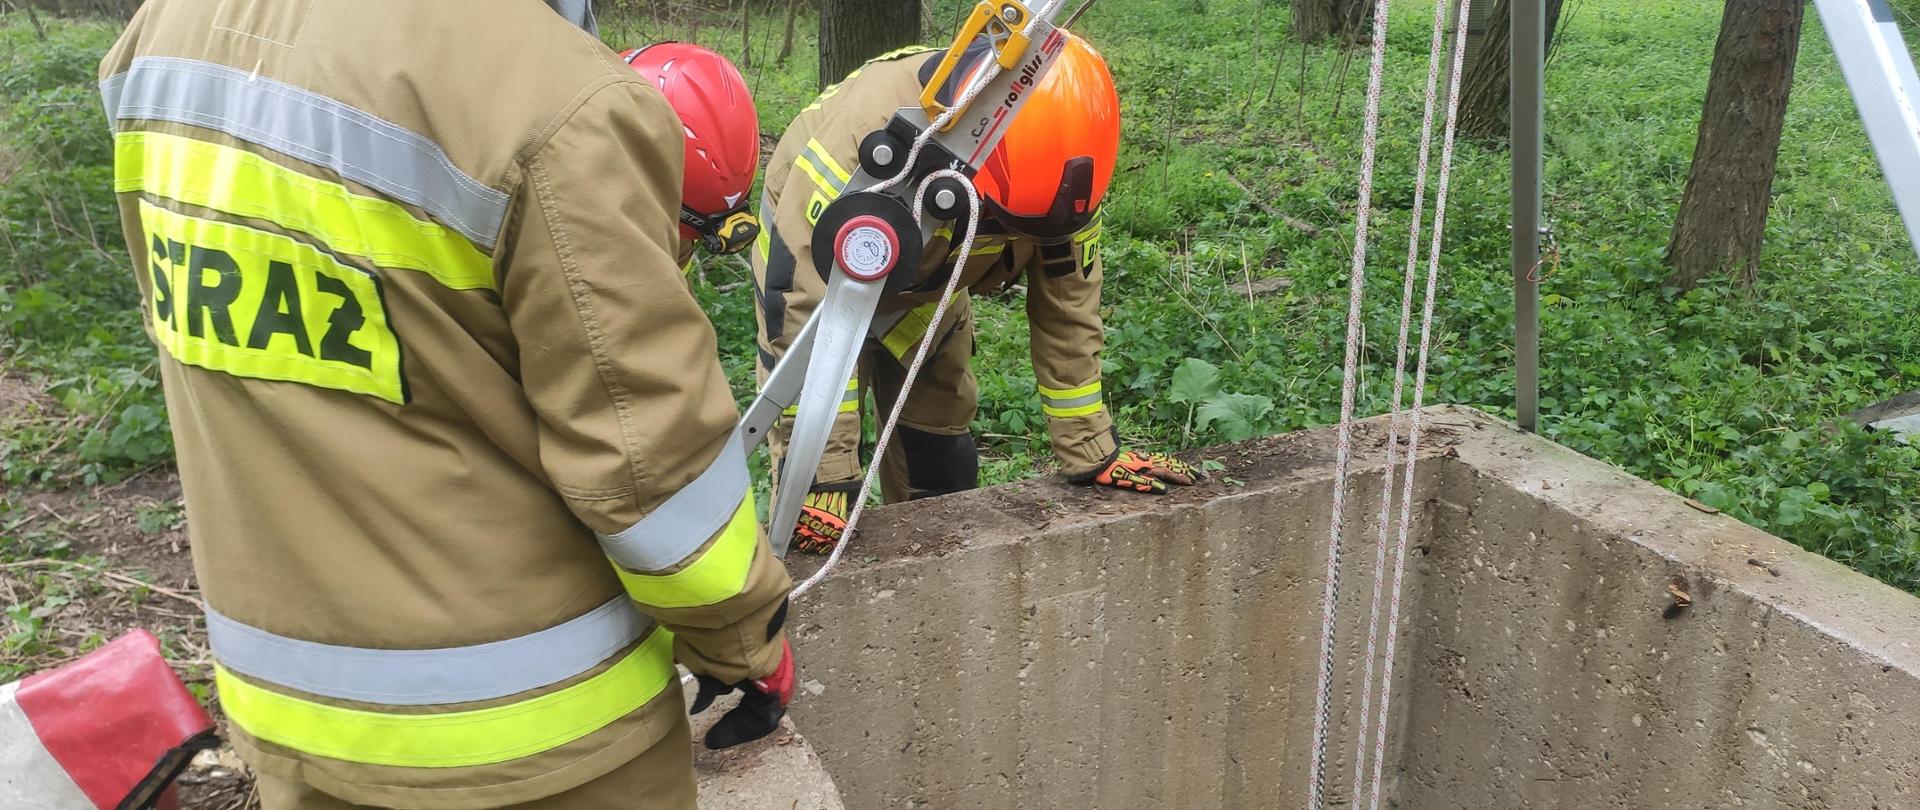 Strażacy pochyleni nad studnią z rozstawionym sprzętem wysokościowym